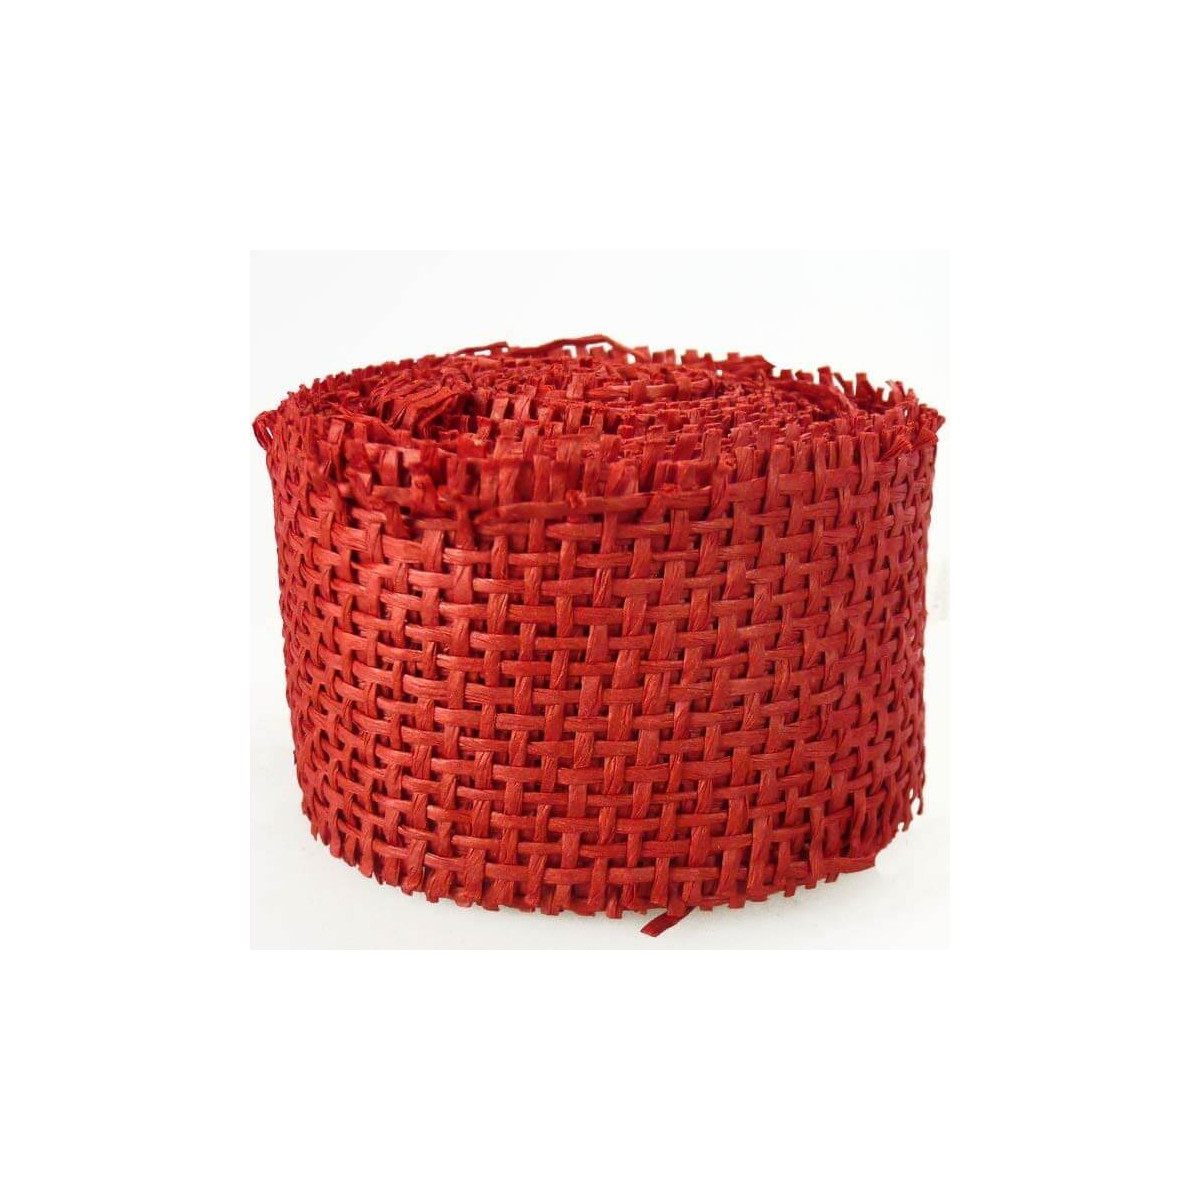 Rouleau de ruban resille rouge decoration